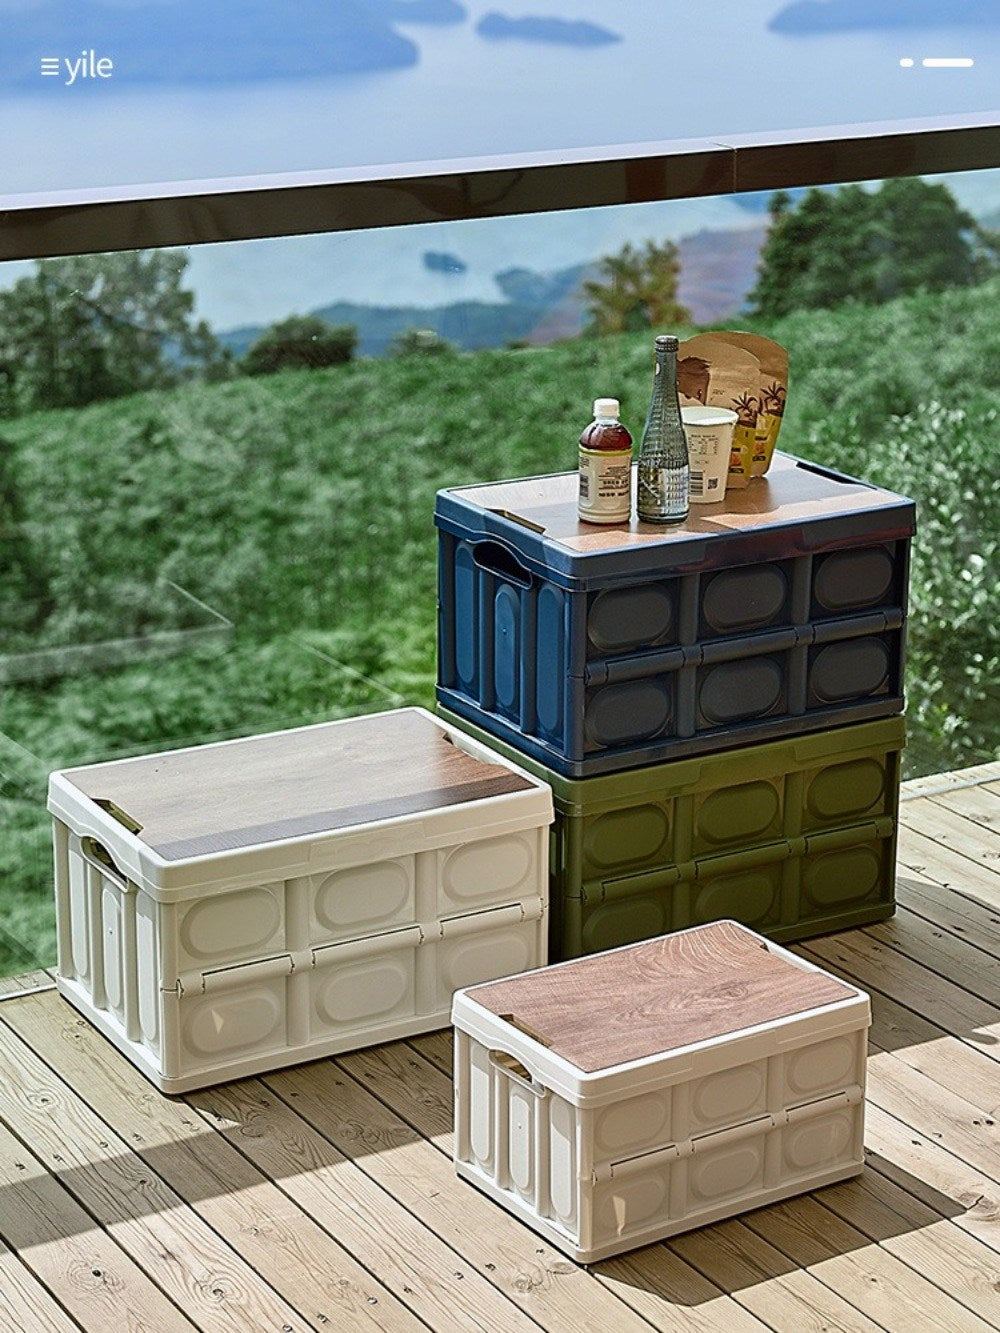 캠핑척박스 폴딩 선반 테이블 식탁 밀리터리 차박 야외 피크닉 수납상자 정리함 접이식 BQ3050606